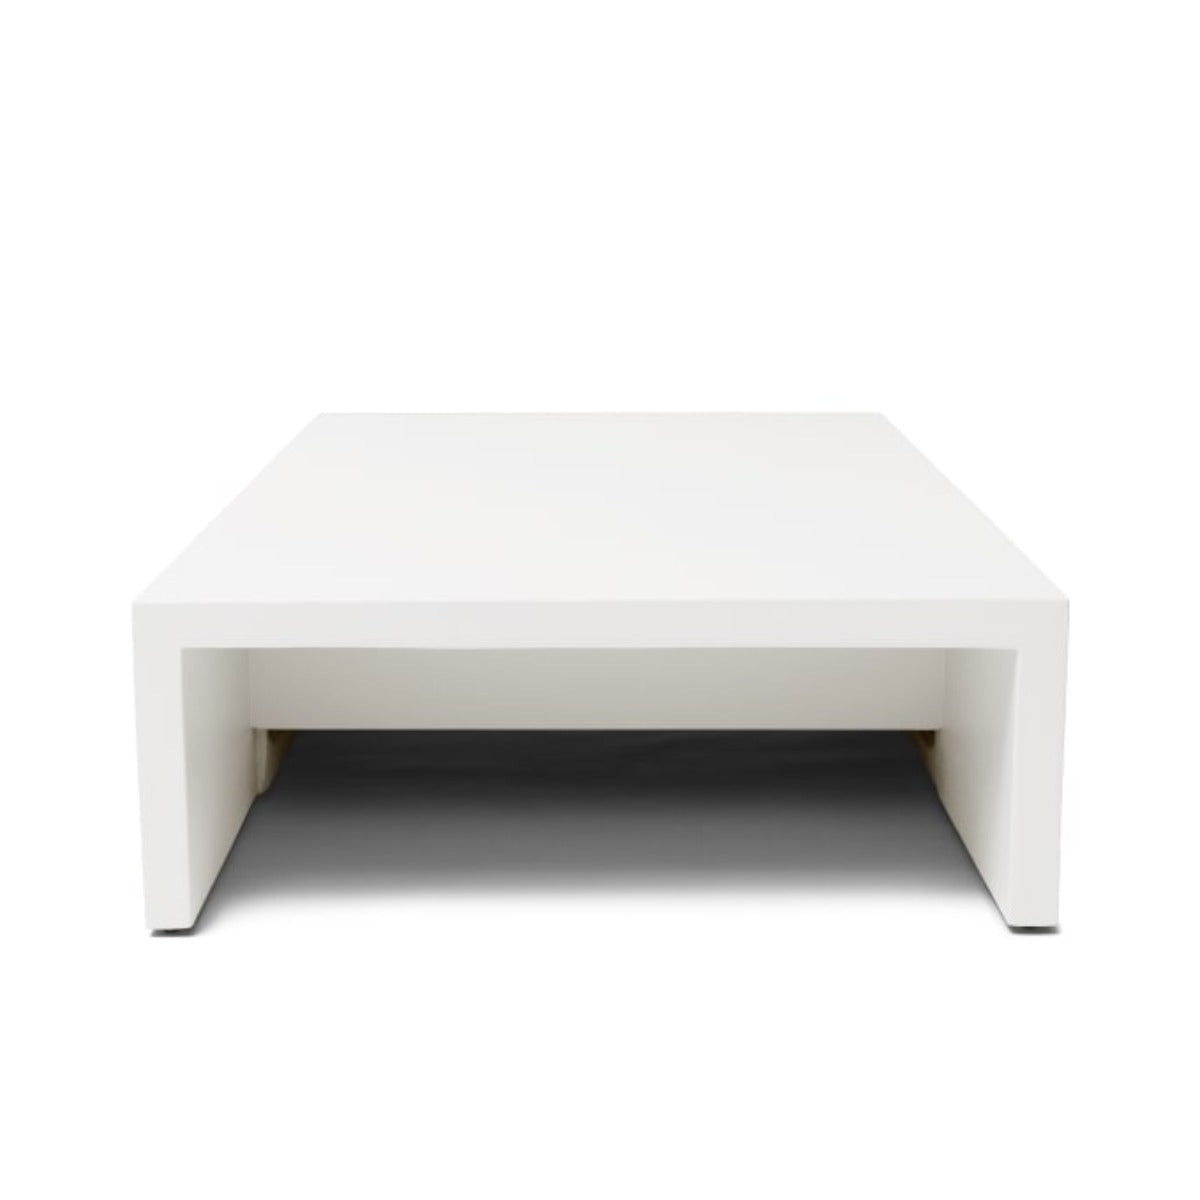 Blinde Niche L50 Concrete Coffee Table - Graphite - Outdoorium